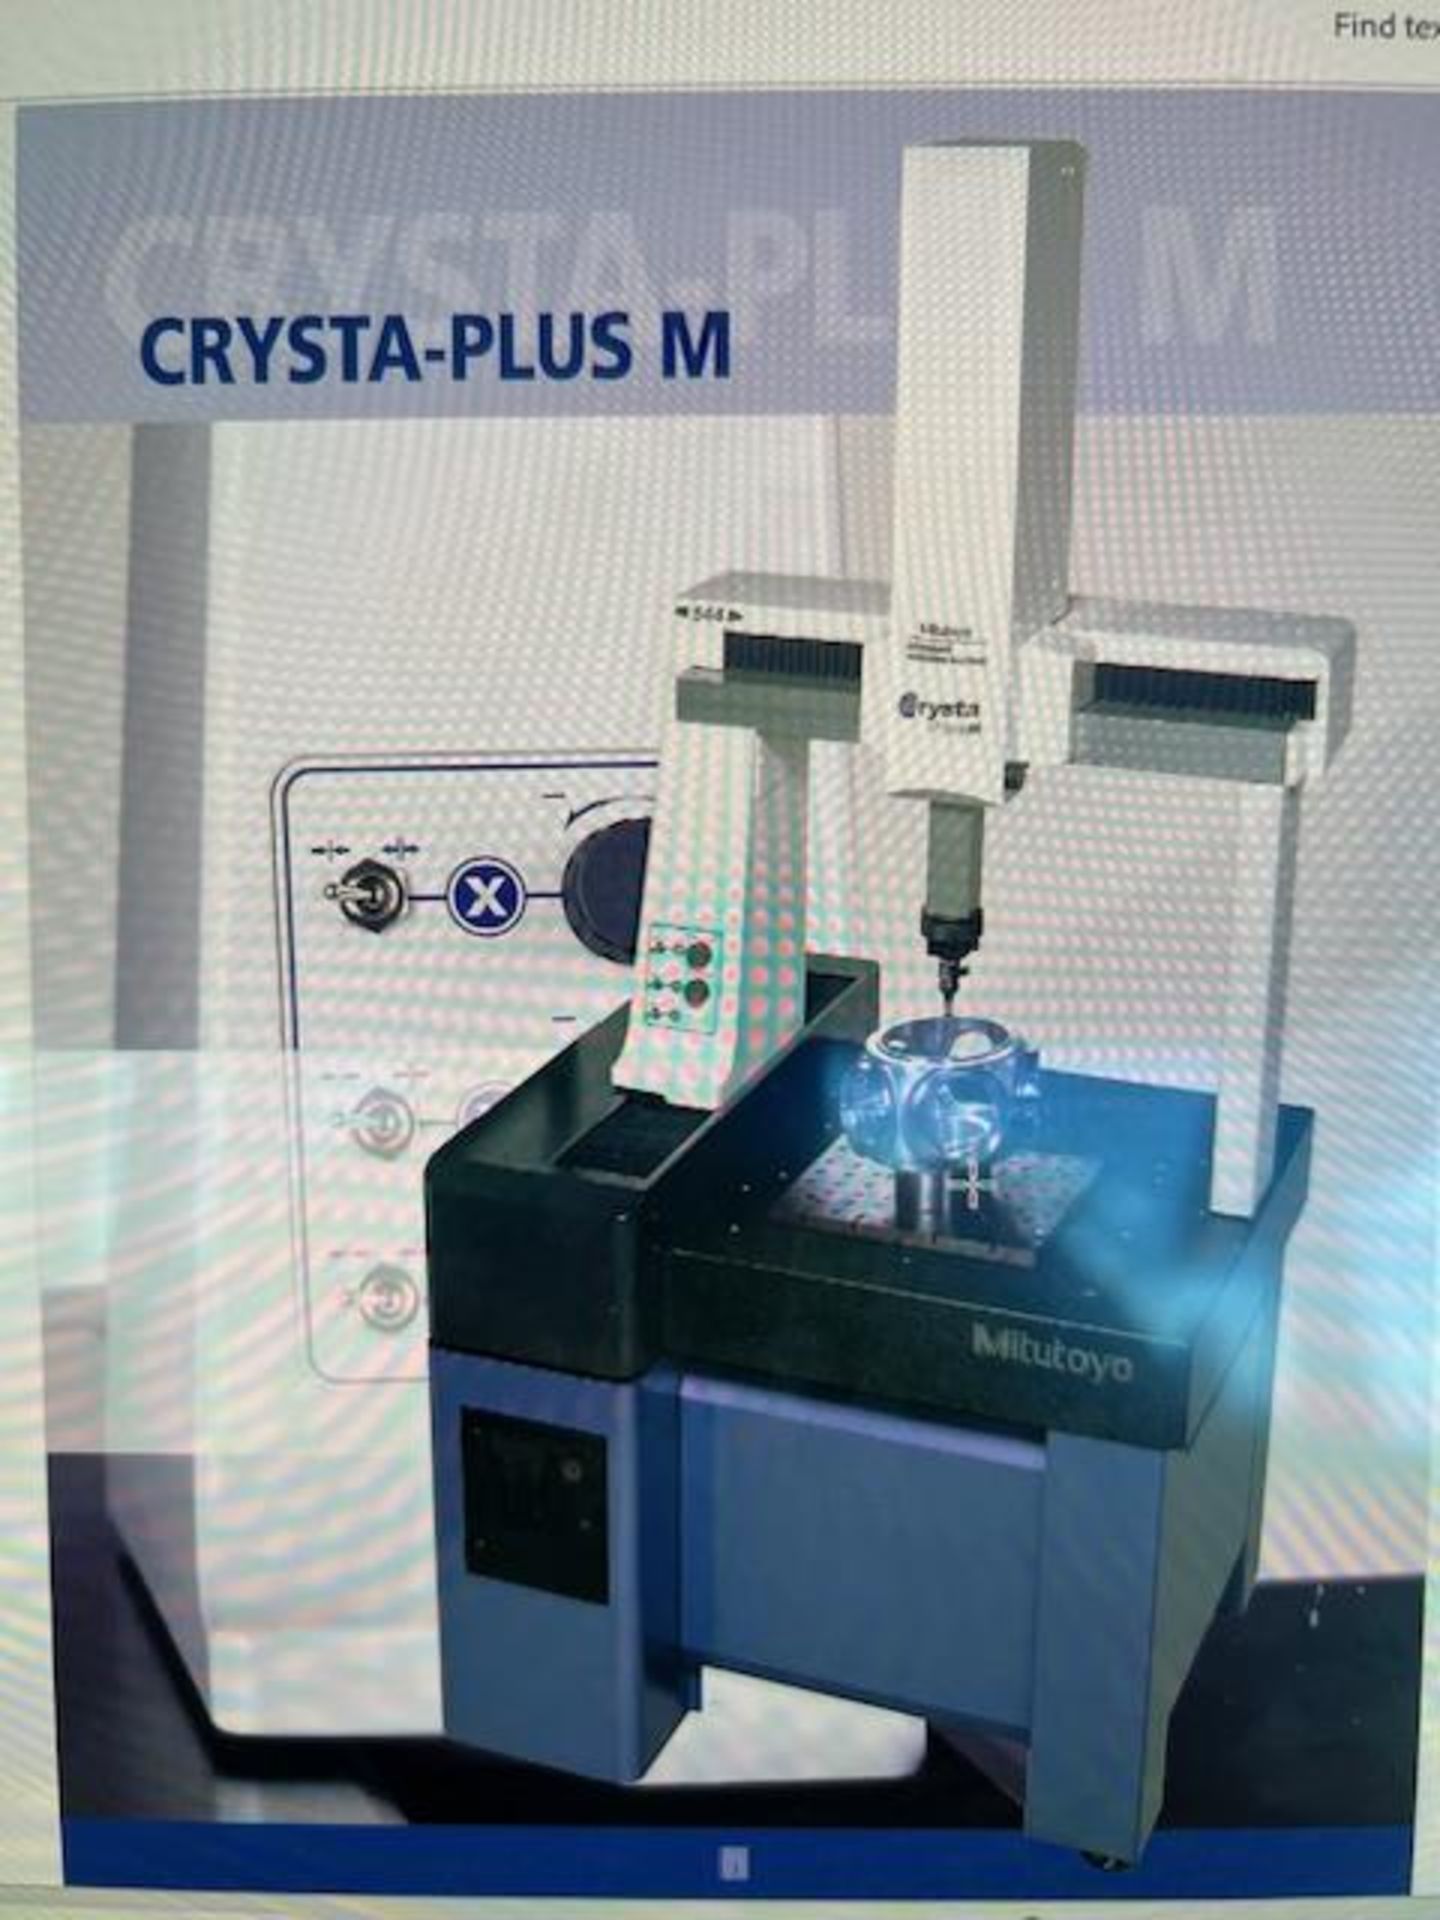 (2019)Mitutoyo Crysta-Plus "M7106" CNC Coordinate Measuring M/C - Hopkins, MI - Image 6 of 19